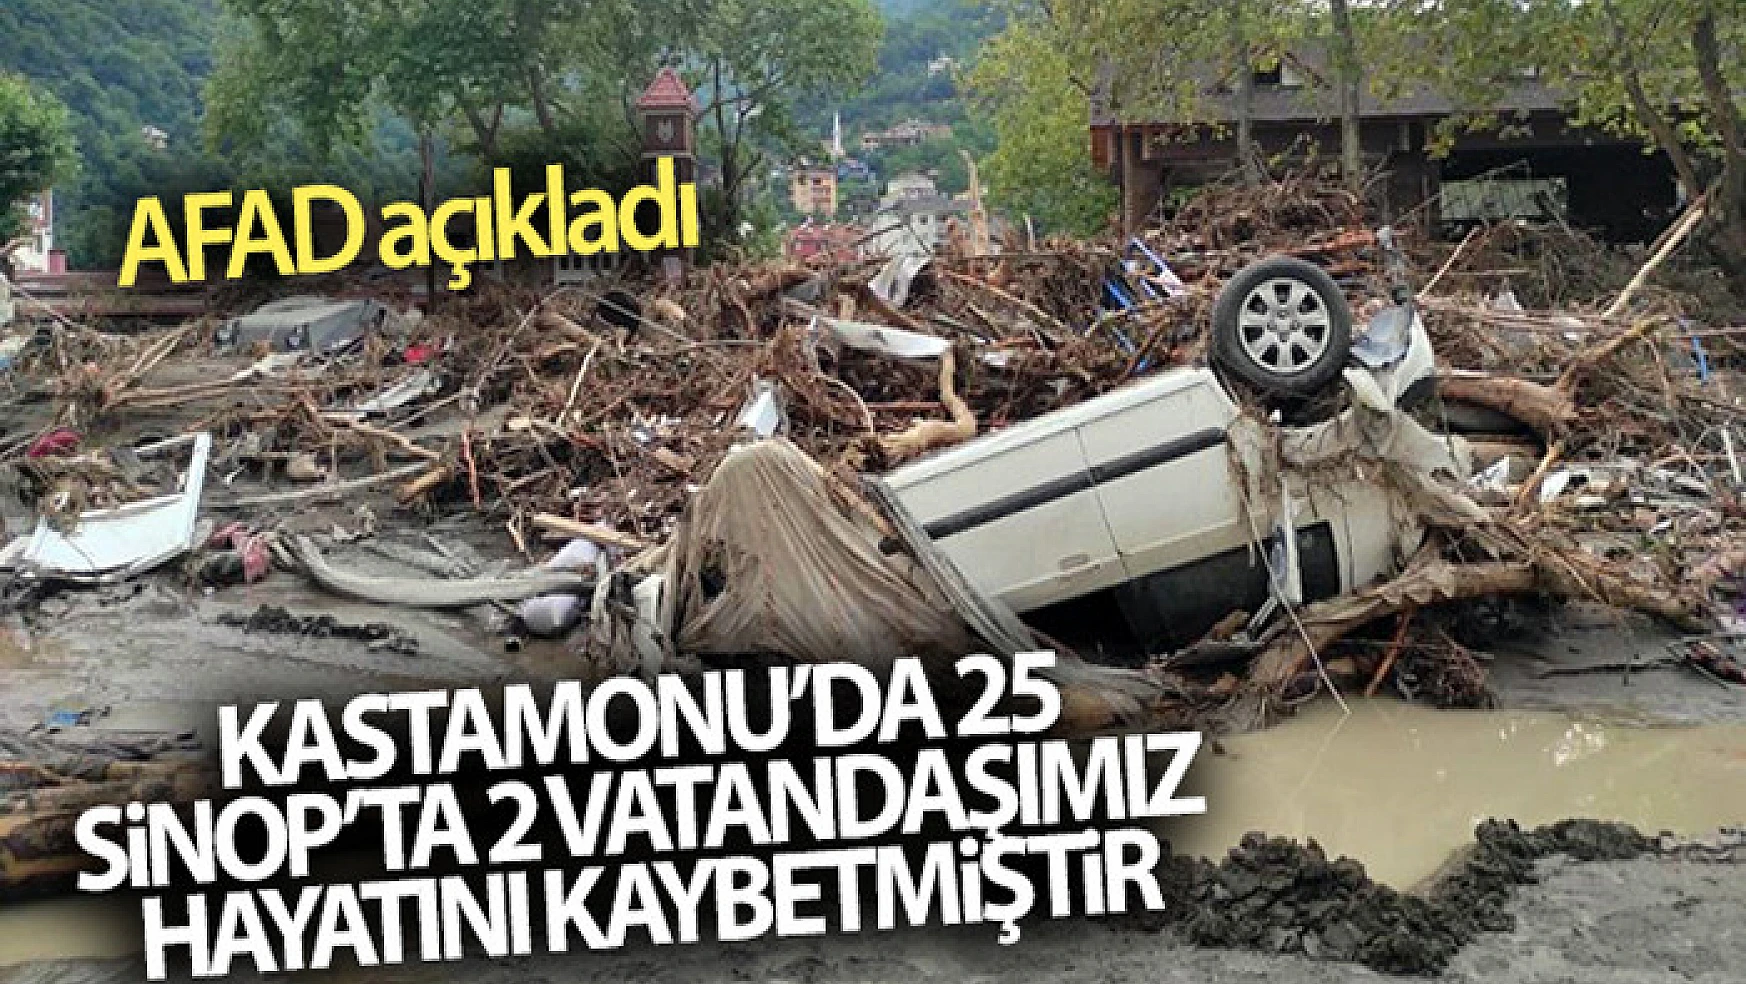 AFAD açıkladı! Kastamonu'da 25, Sinop'ta 2 vatandaşımız hayatını kaybetmiştir